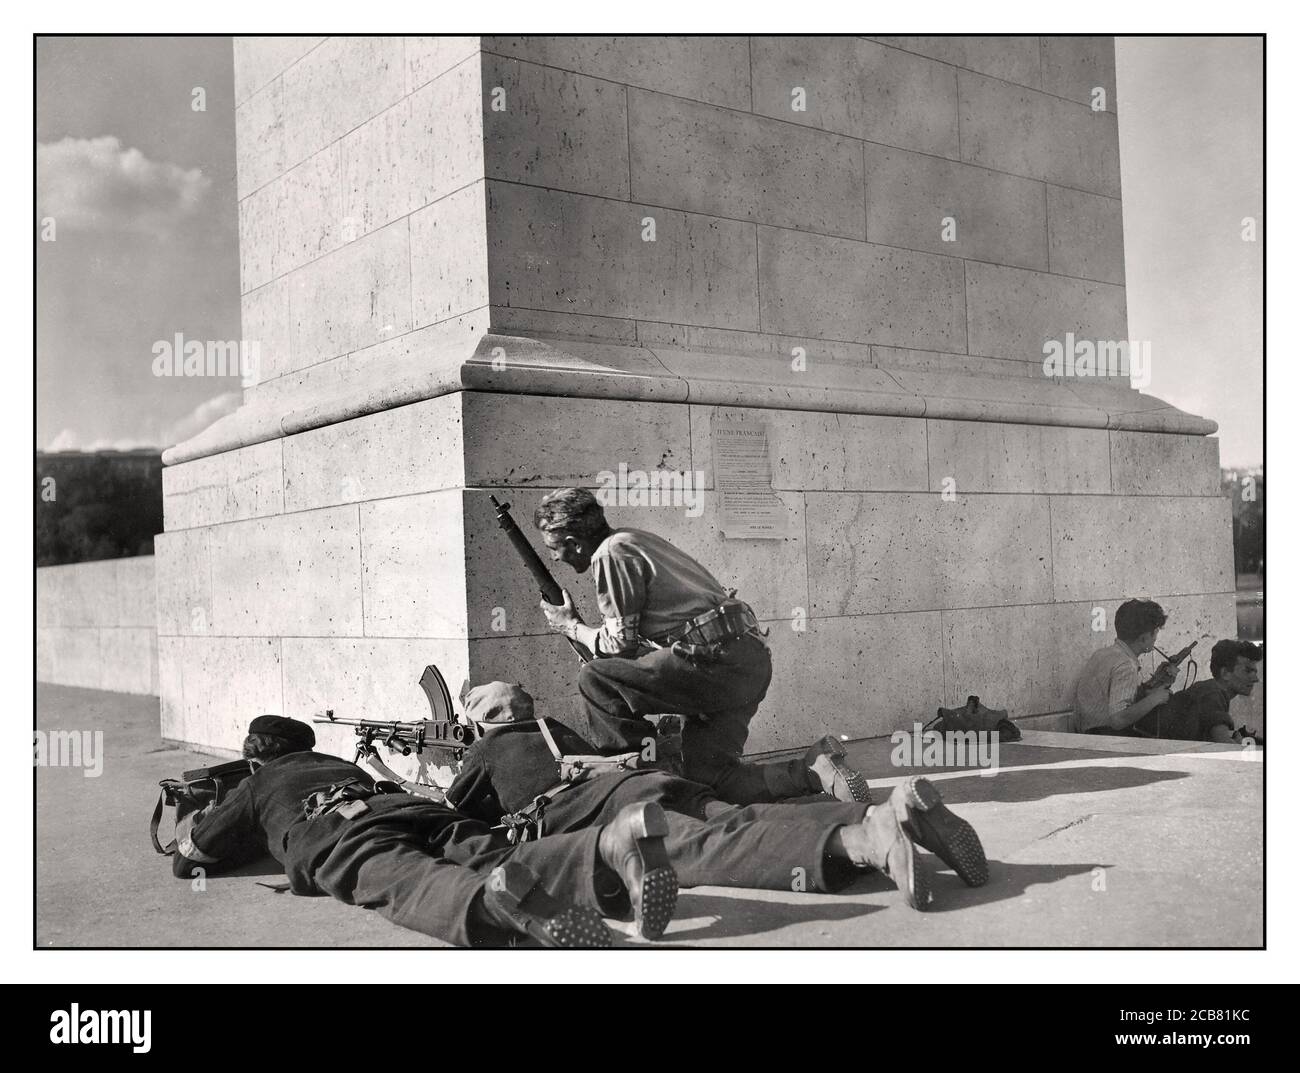 Free French Army Archive WW2 1. Französische Armee Französische Truppen und Maquis-Widerstandskämpfer, bewaffnet mit britischen Waffen, darunter eine Sten-Waffe und ein Bren-Leichtmaschinengewehr, decken während der Schlacht um die Befreiung der Stadt am 21. November 1944 eine große Kreuzung in Belfort, Frankreich, ab. Stockfoto